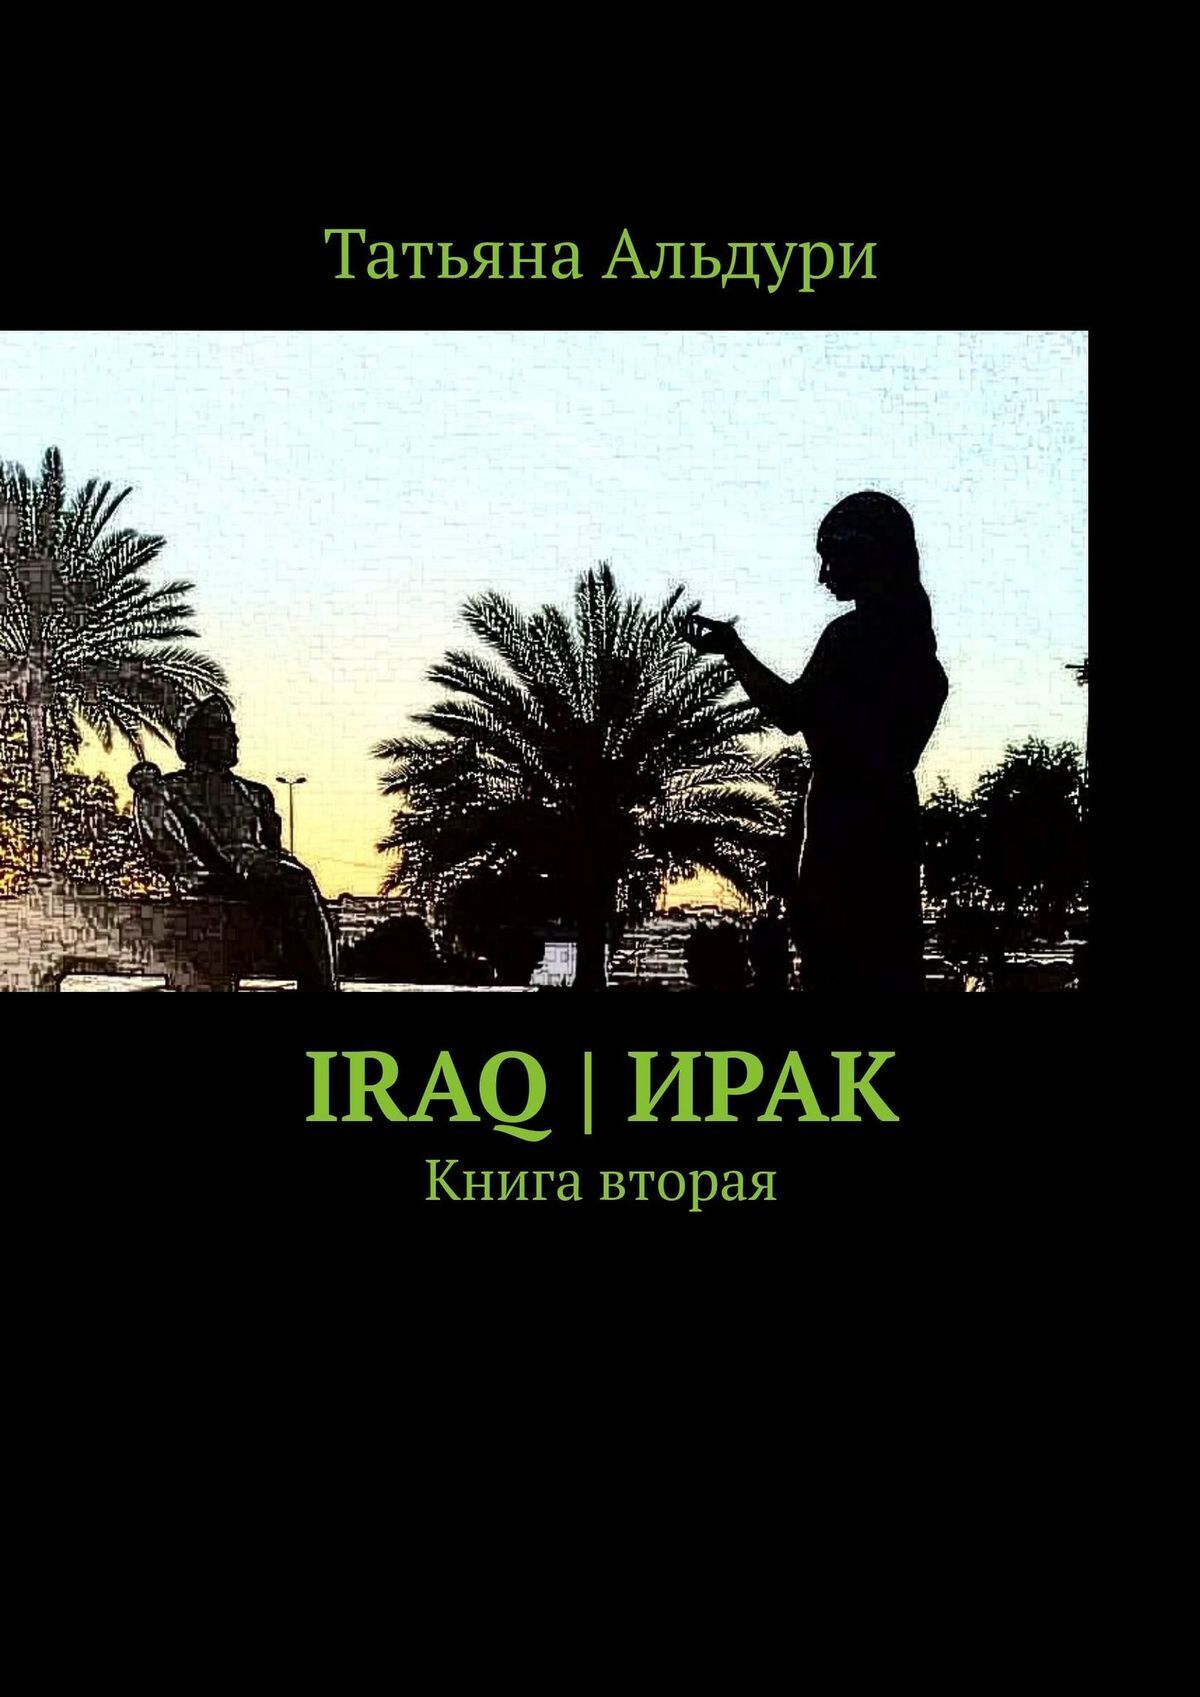 Iraq | Ирак. Книга вторая